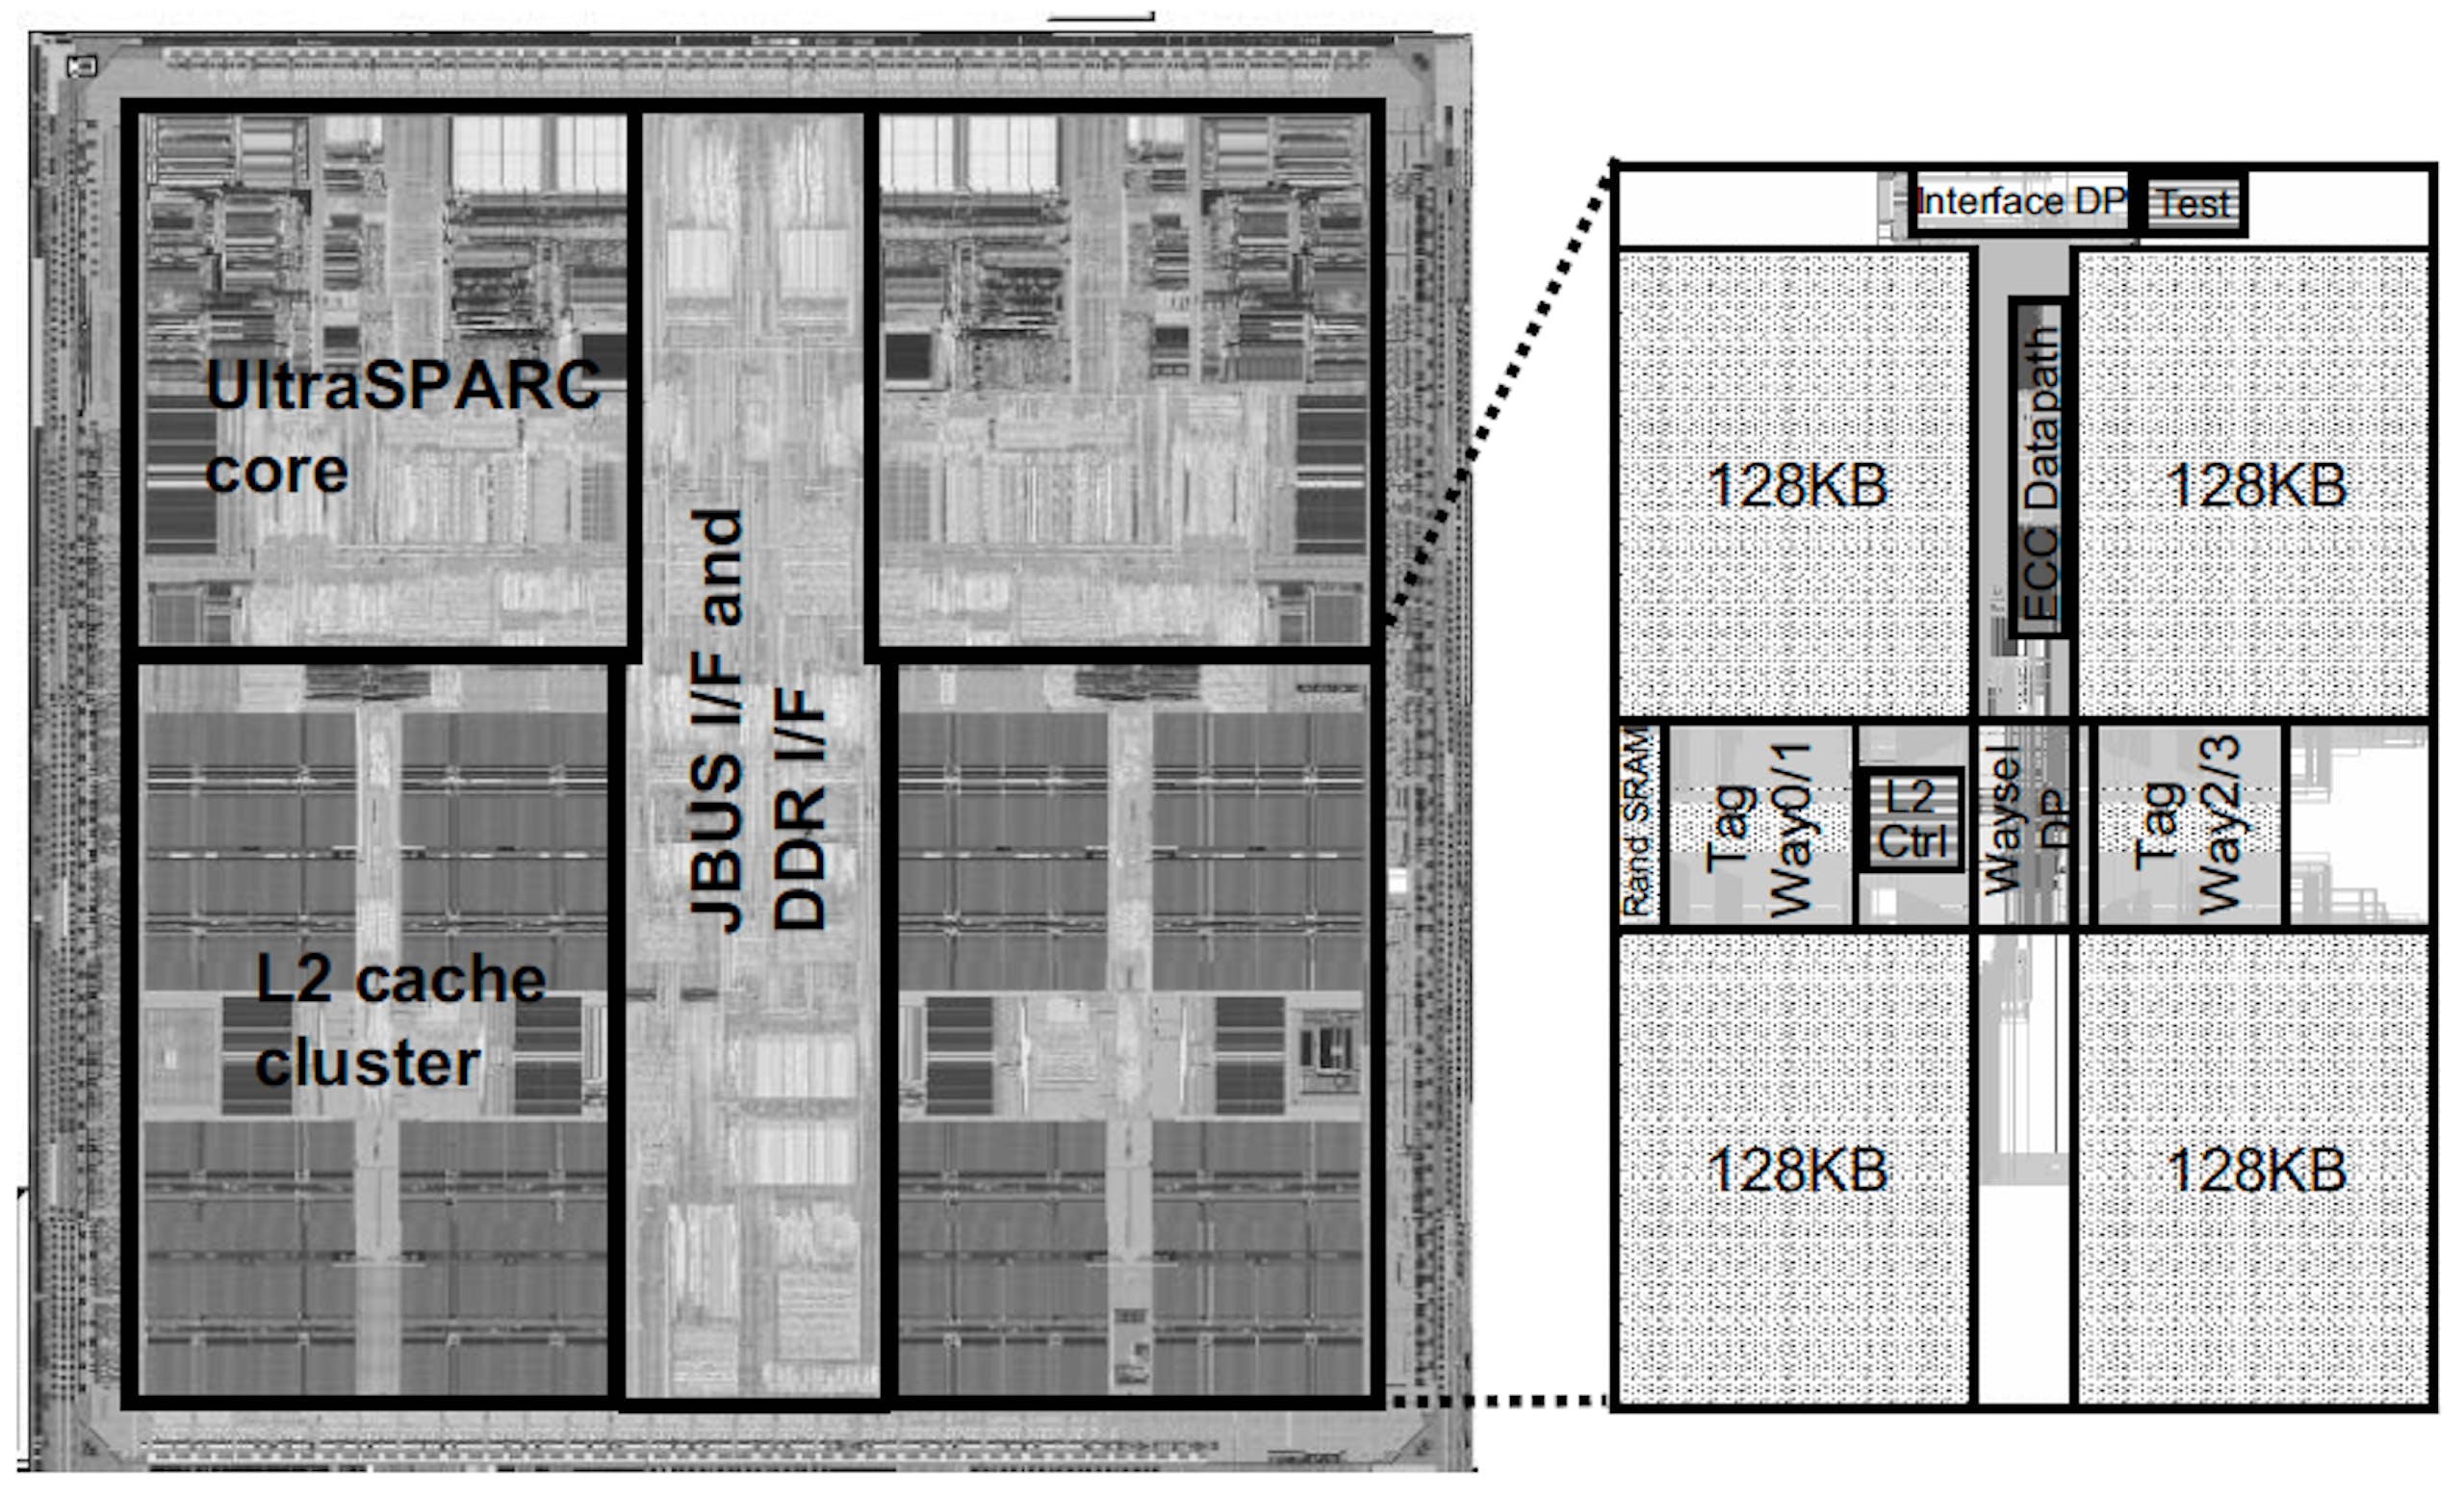 照片中提到了UltraSPARC、core、L2 cache，包含了平面圖、UltraSPARC II、SPARC、超SPARC、微處理器